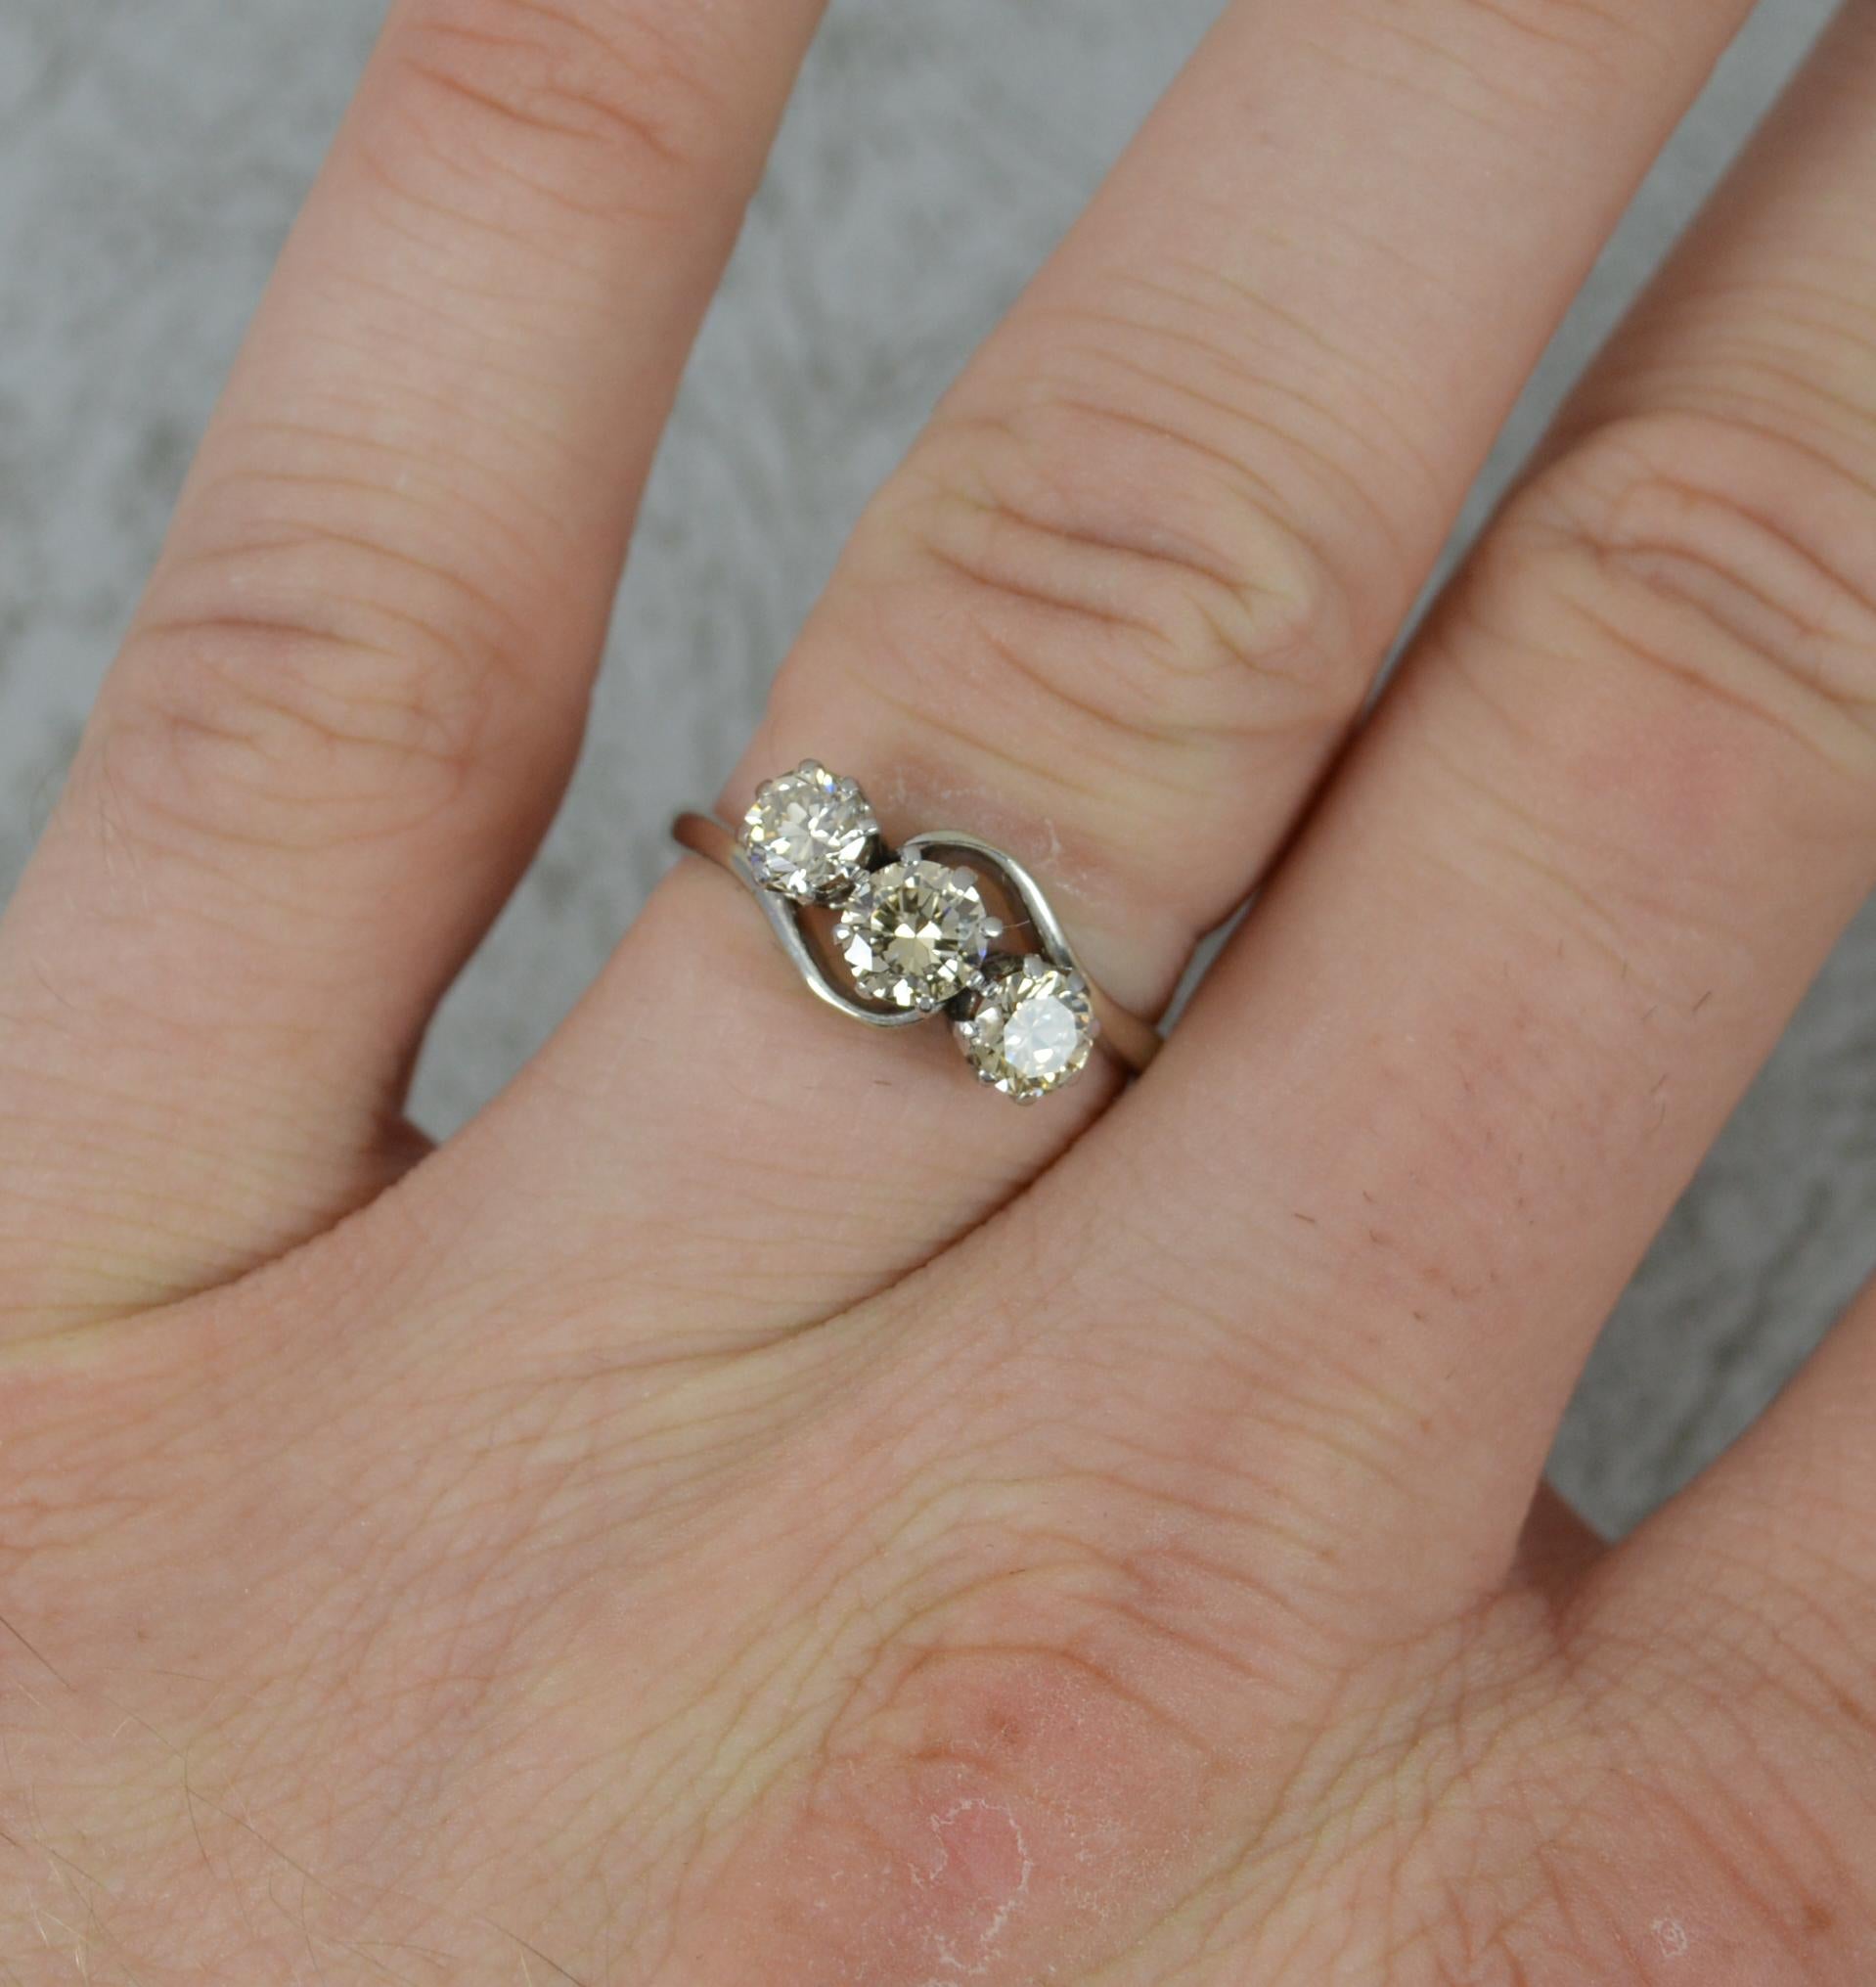 Ein schöner Ring mit drei natürlichen Diamanten.
Schaft aus massivem 18 Karat Weißgold und Krallenfassung aus Platin.
Besetzt mit drei natürlichen runden Diamanten im Brillantschliff von insgesamt 1 Karat. In Mehrfachkrallenfassung auf einer